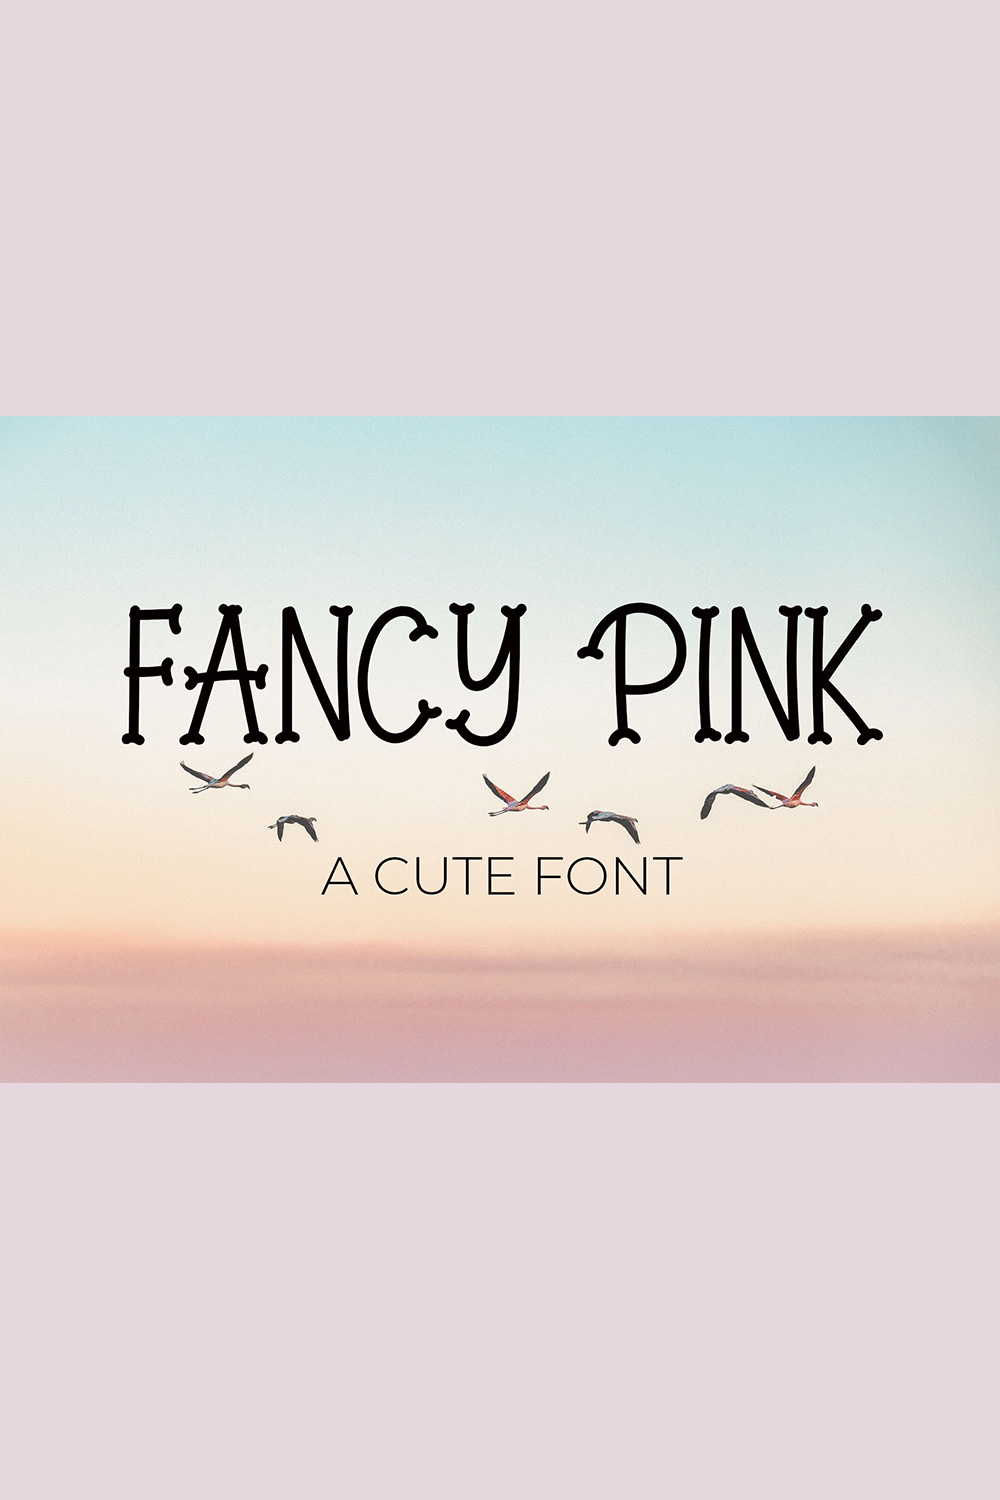 Font Script Fancy Pink pinterest image.